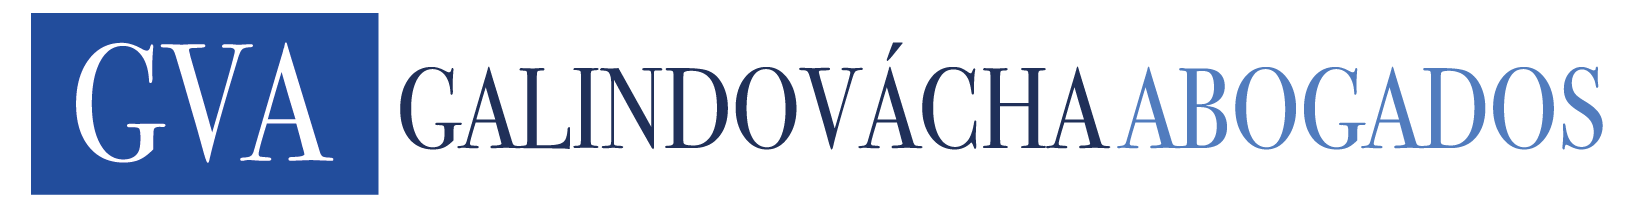 LogoGVA-02-05